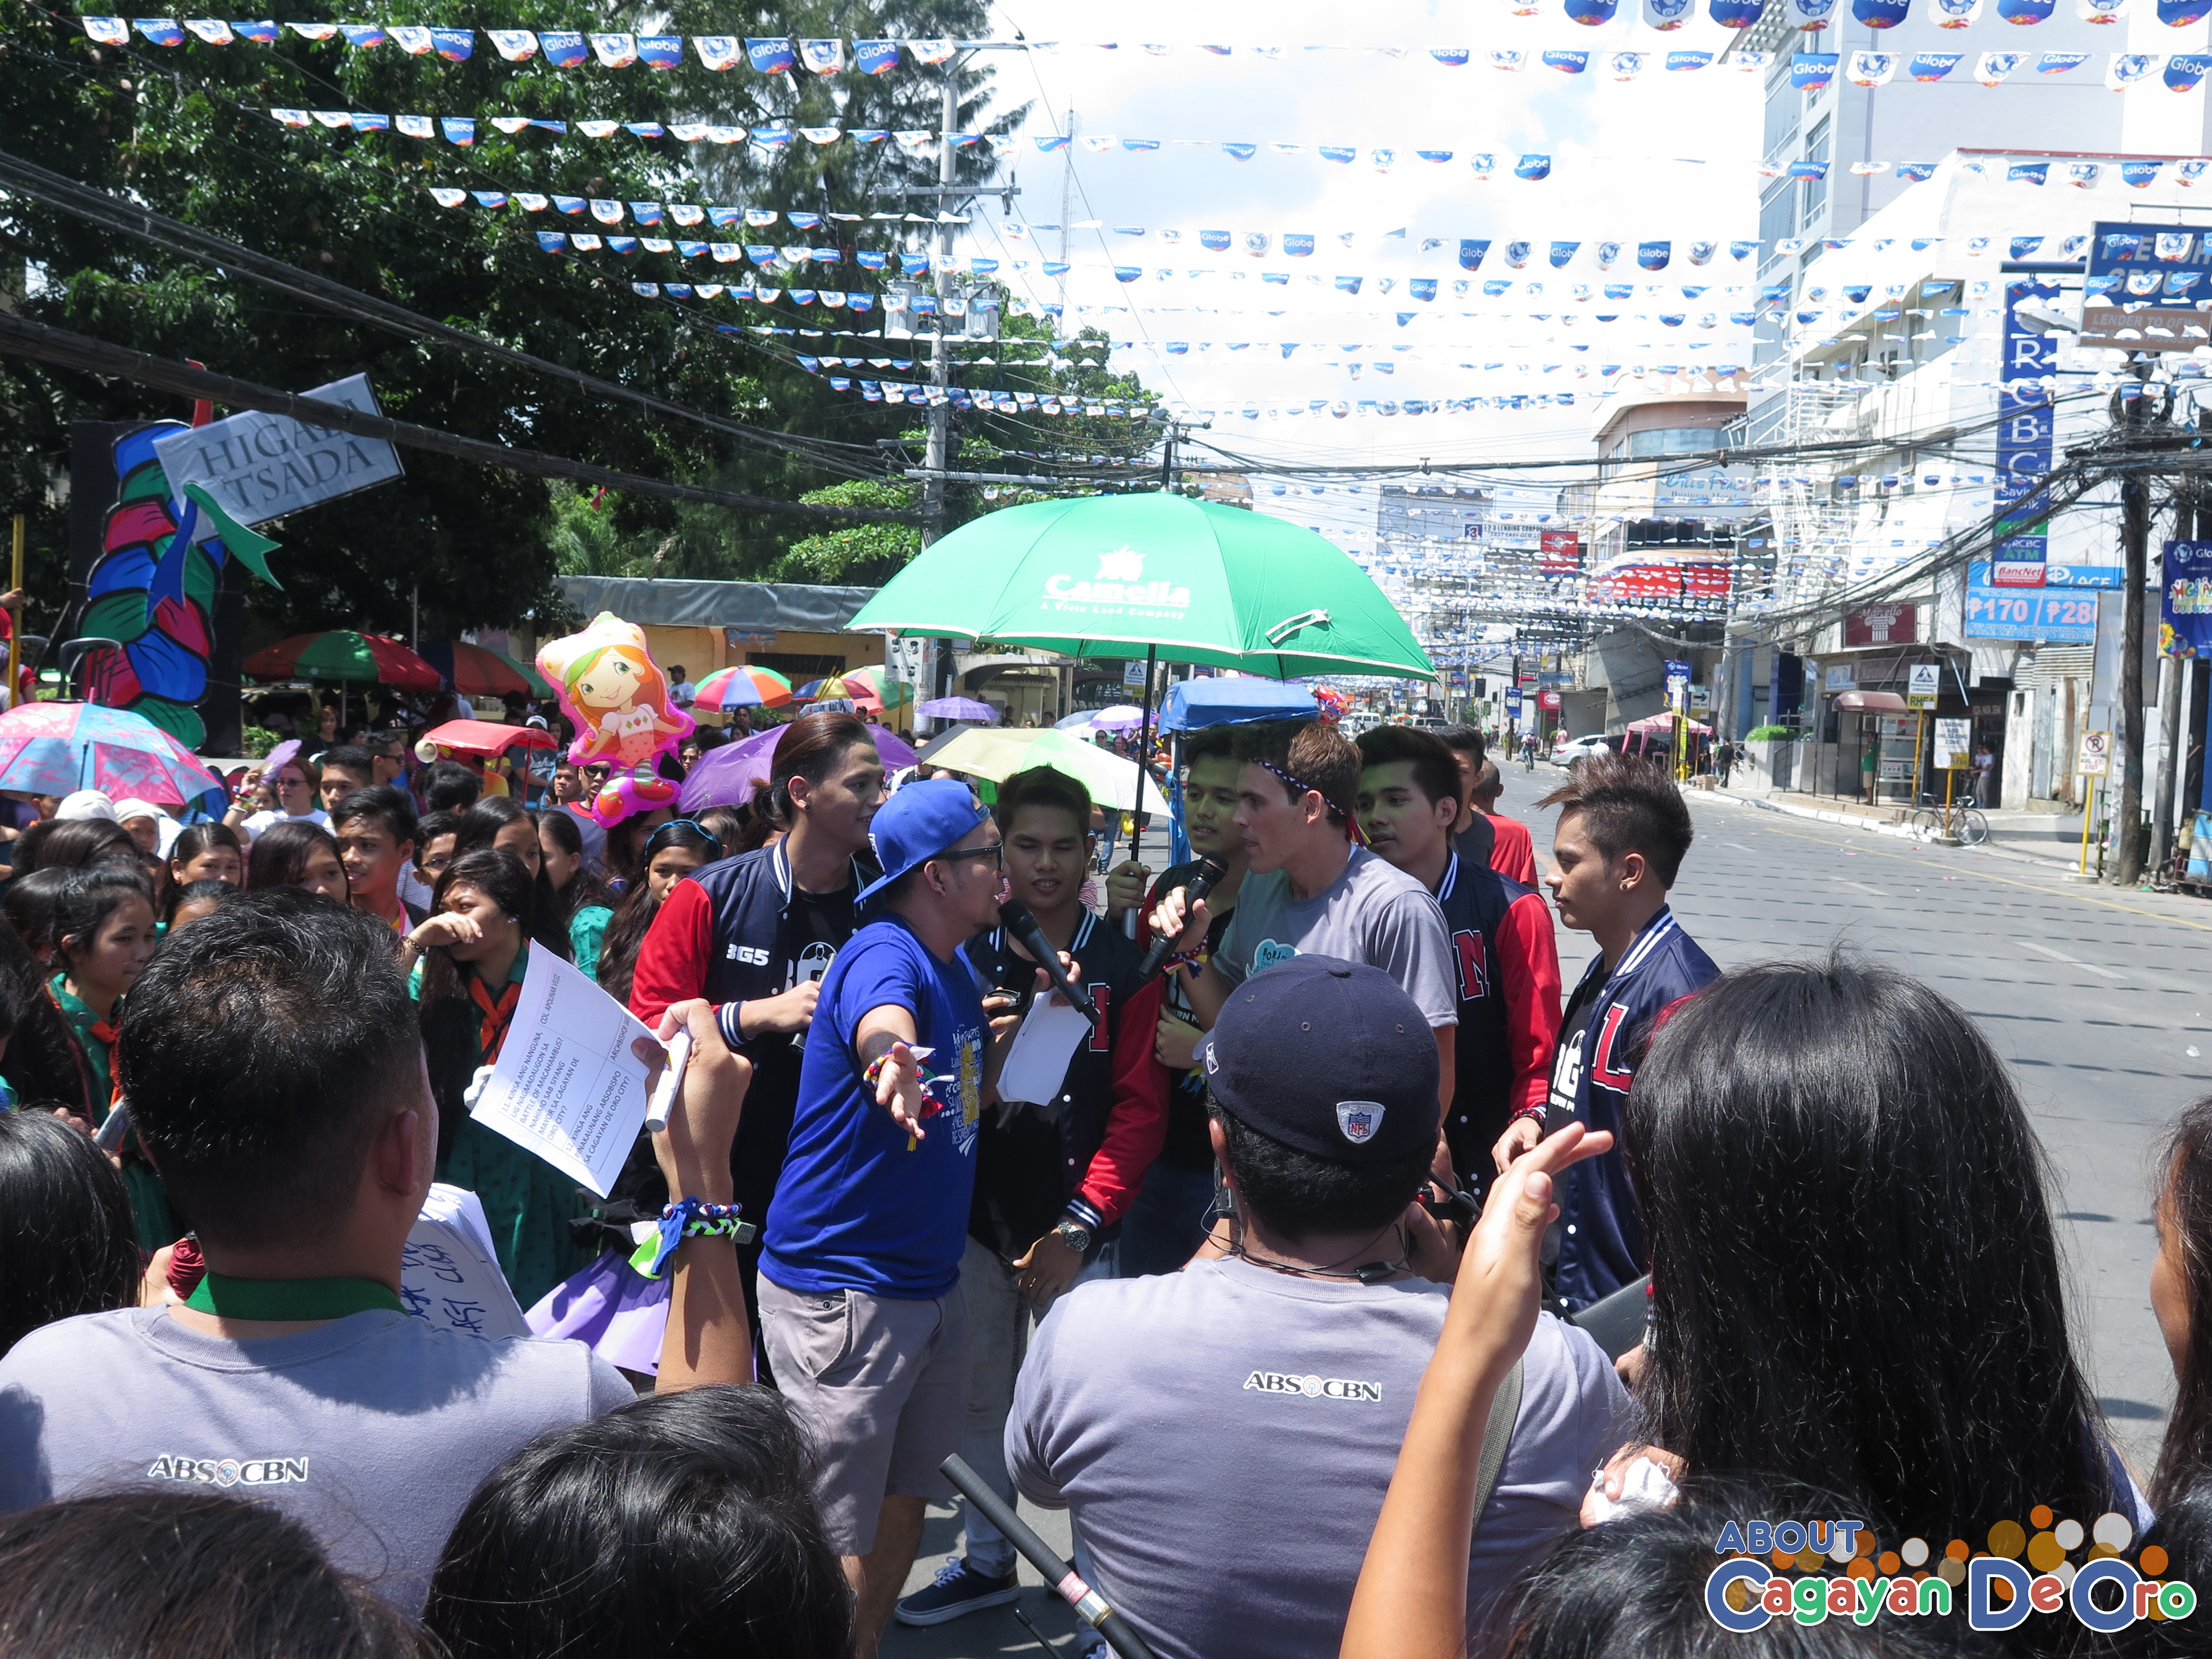 MagTV Na shooting at Cagayan de Oro The Higalas Parade of Floats and Icons 2015